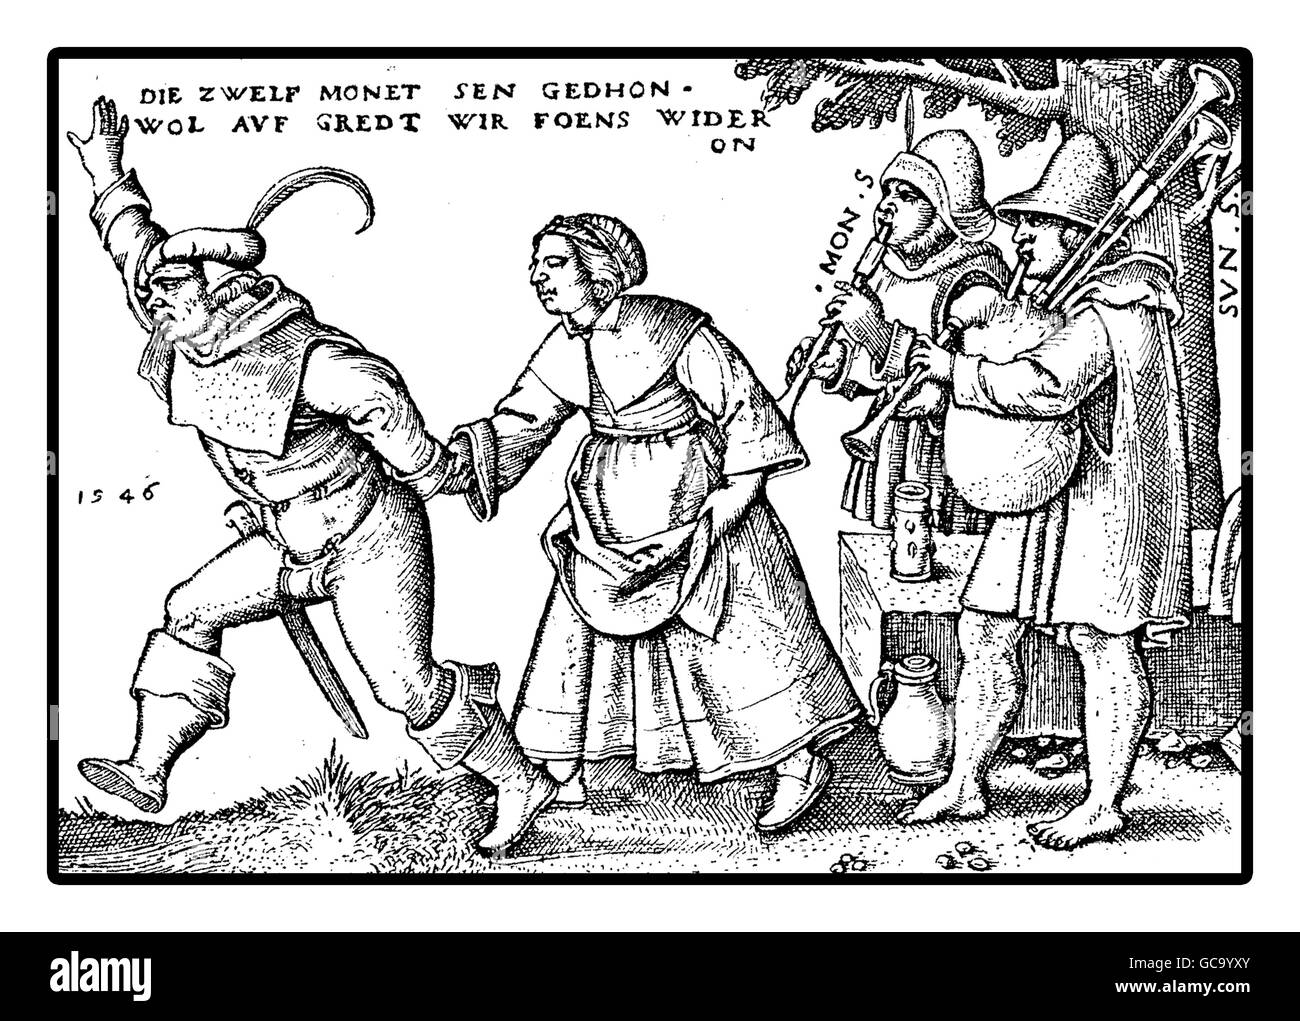 Anno 1546, contadini celebrare una festa ballando e giocando numerosi festival ha avuto luogo durante l'anno relativi alla religione e natura. Foto Stock